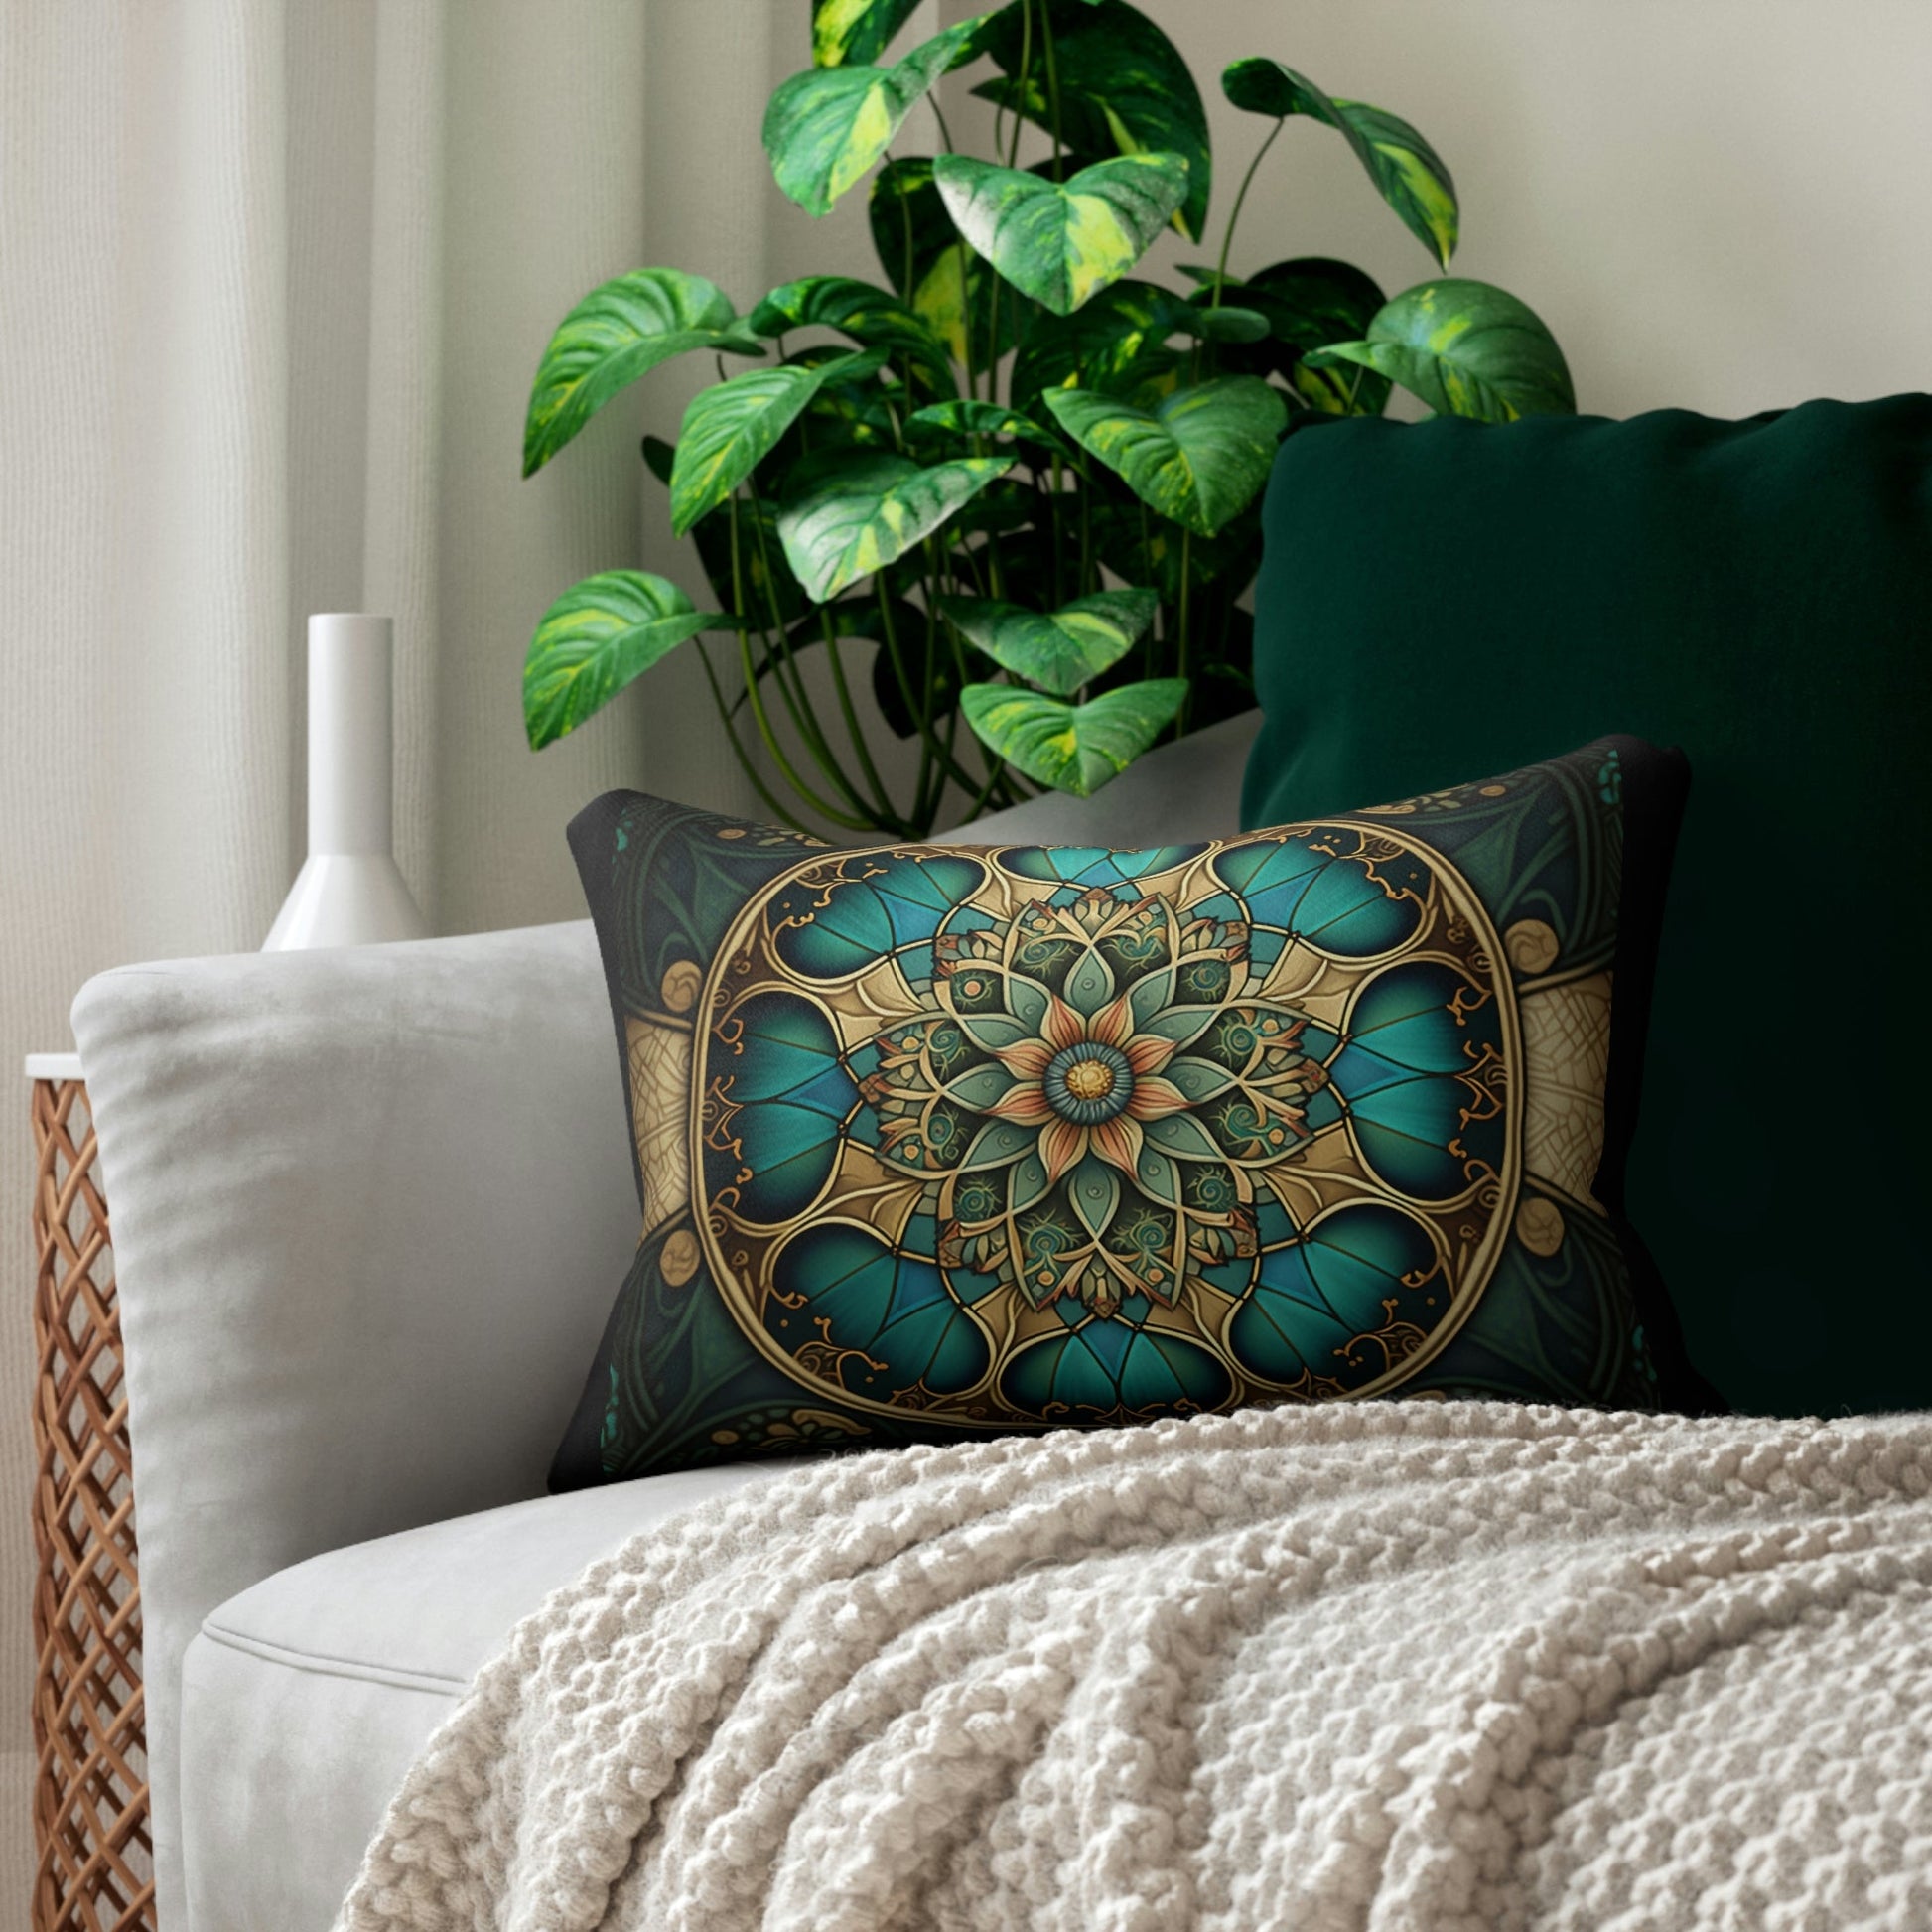 Art Nouveau Mandala Spun Polyester Lumbar Pillow